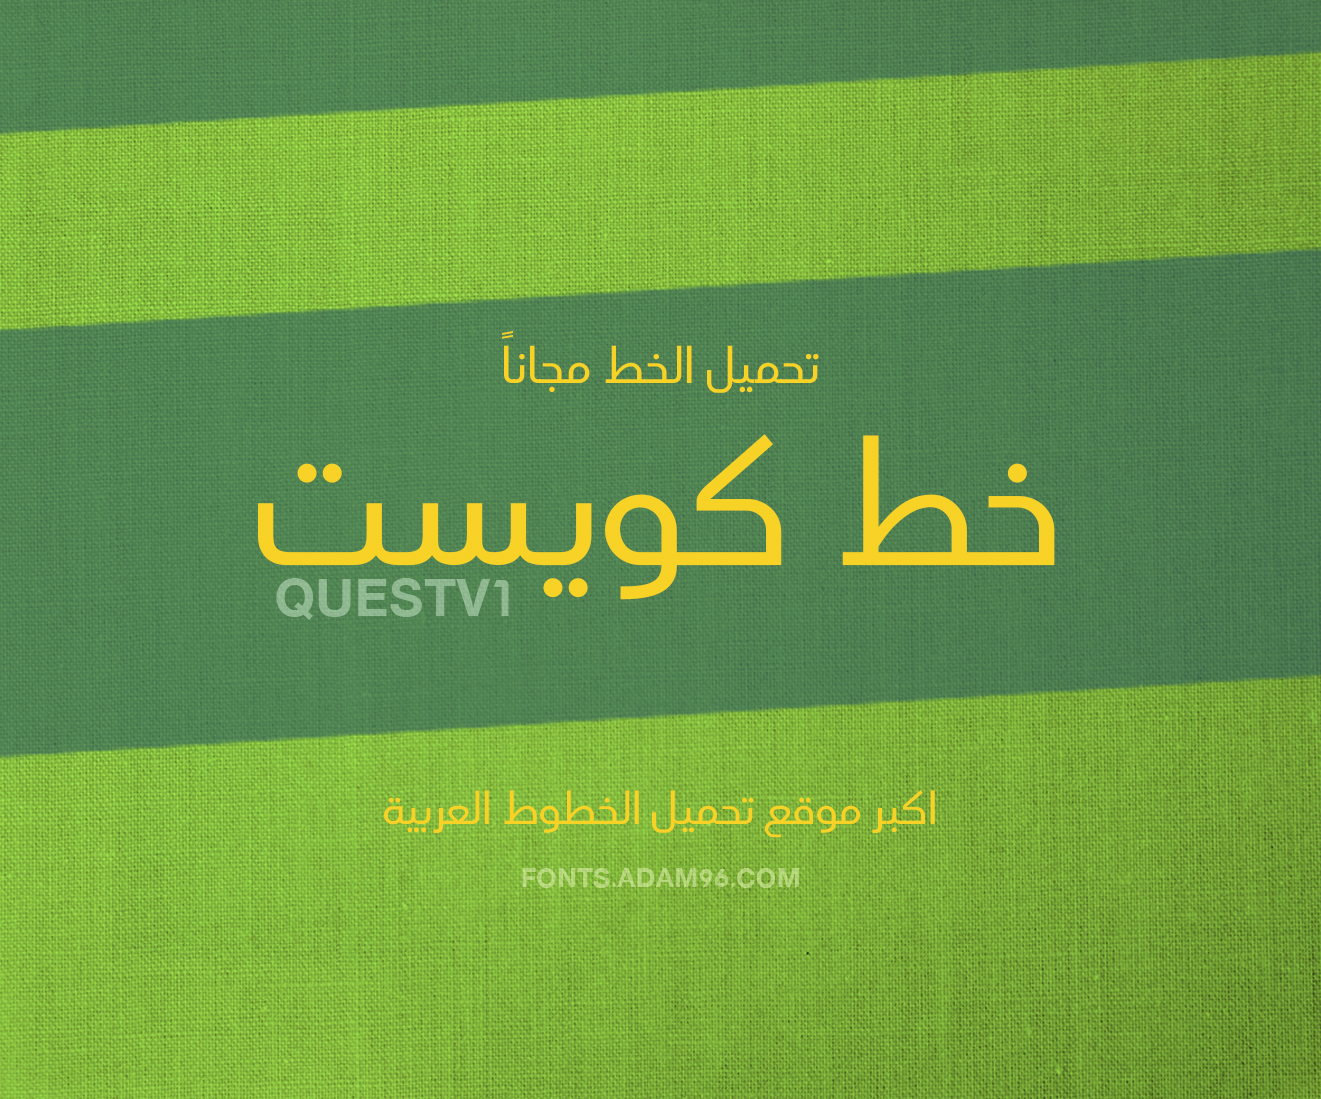 تحميل خط كويست العربي اجمل الخطوط العربية مجانا FONT Questv1